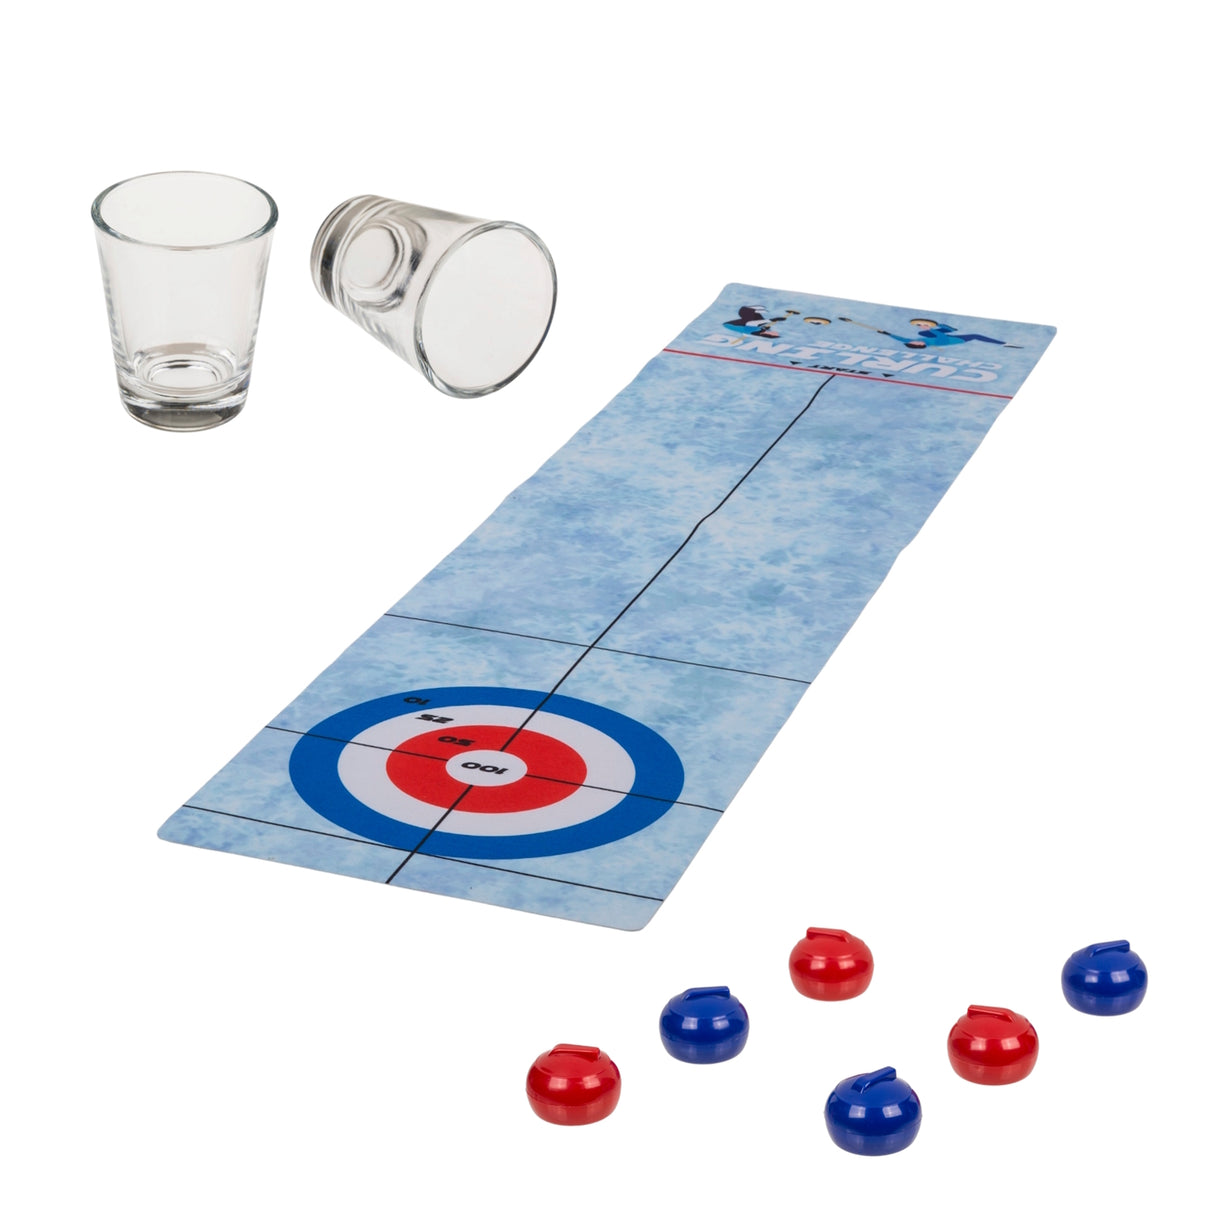 Trinkspiel Tischcurling Curling Partyspiel mit zwei Shotgläsern